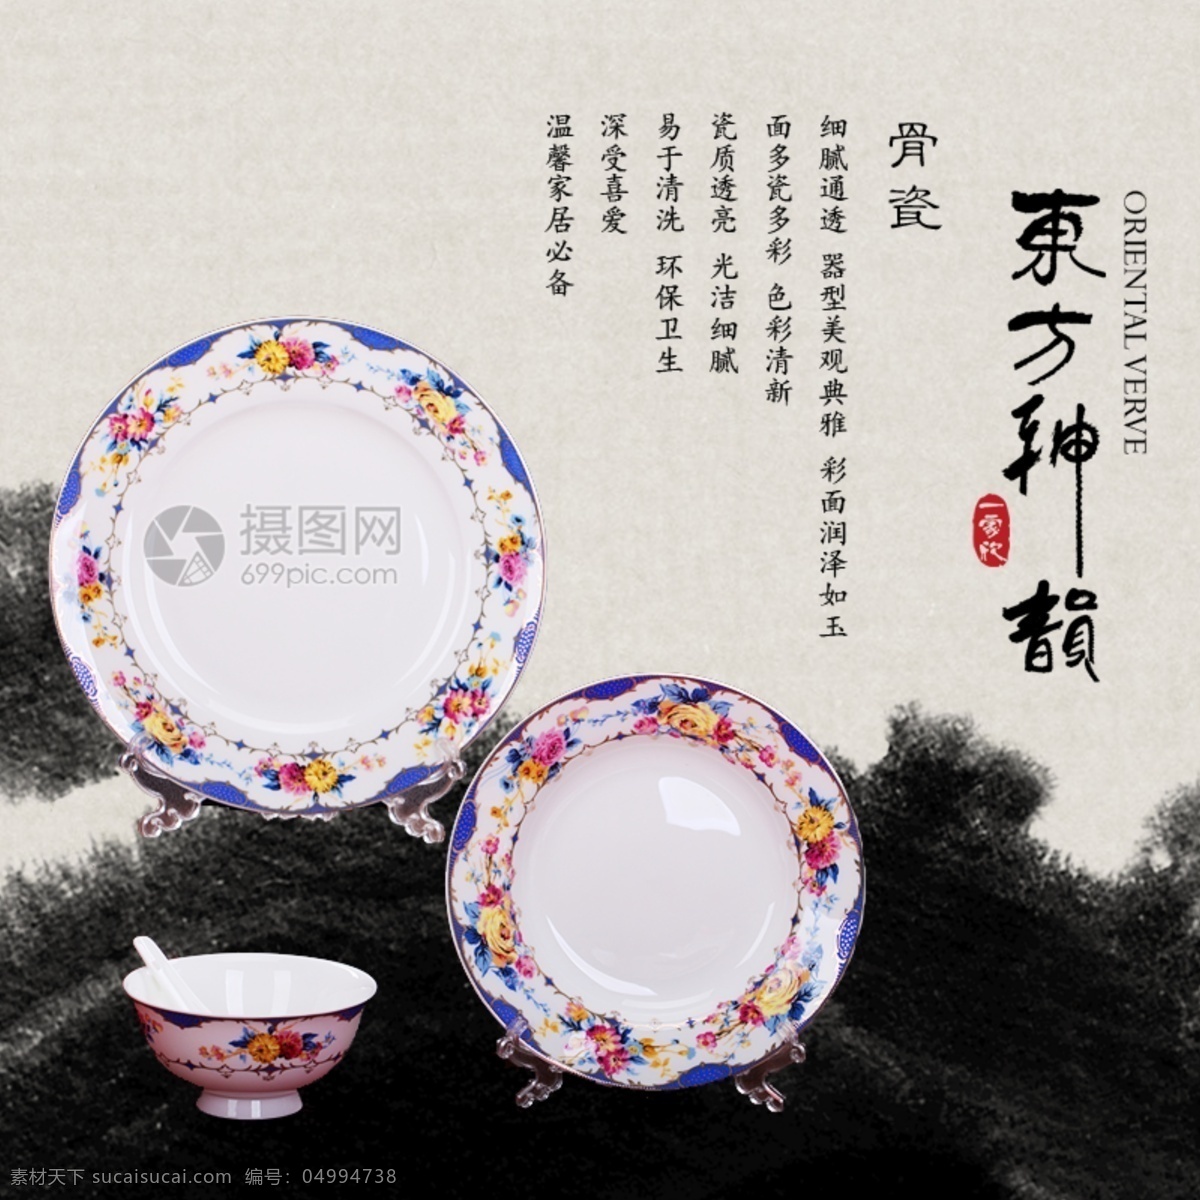 中国 风 家居用品 碗 具 主 图 碗具 高雅 中国风 陶瓷 电商 淘宝 天猫